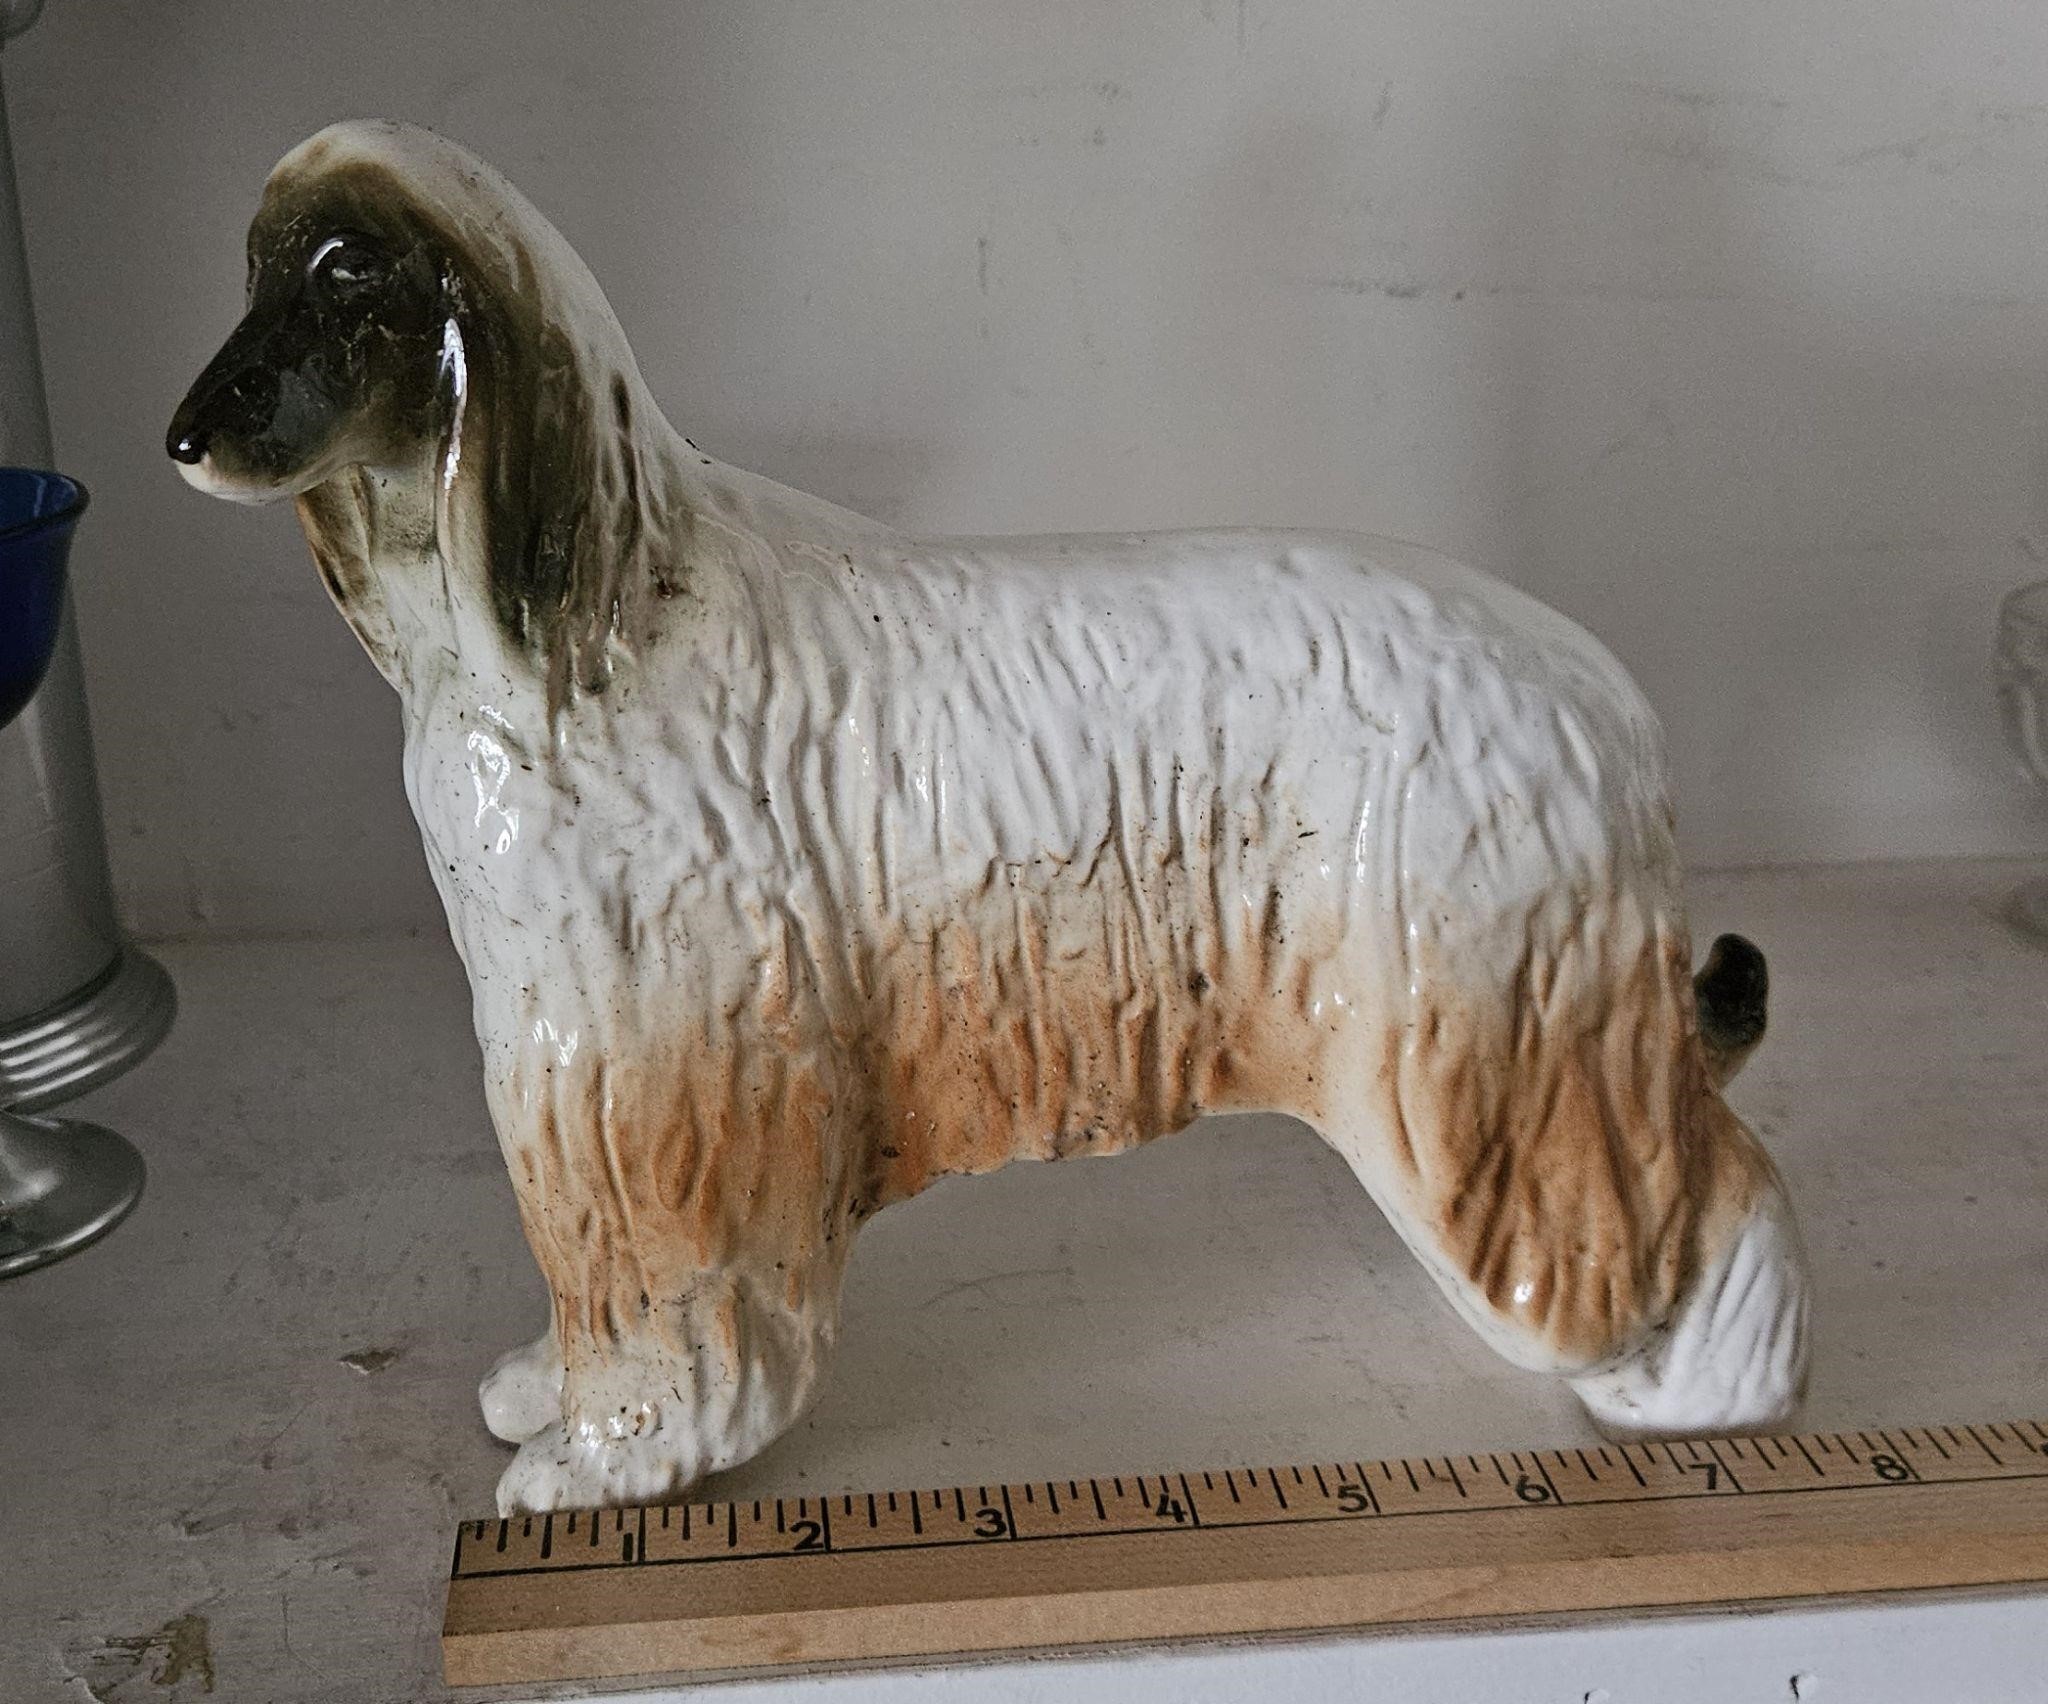 Soviet Porcelain Afghan Hound Dog Figure